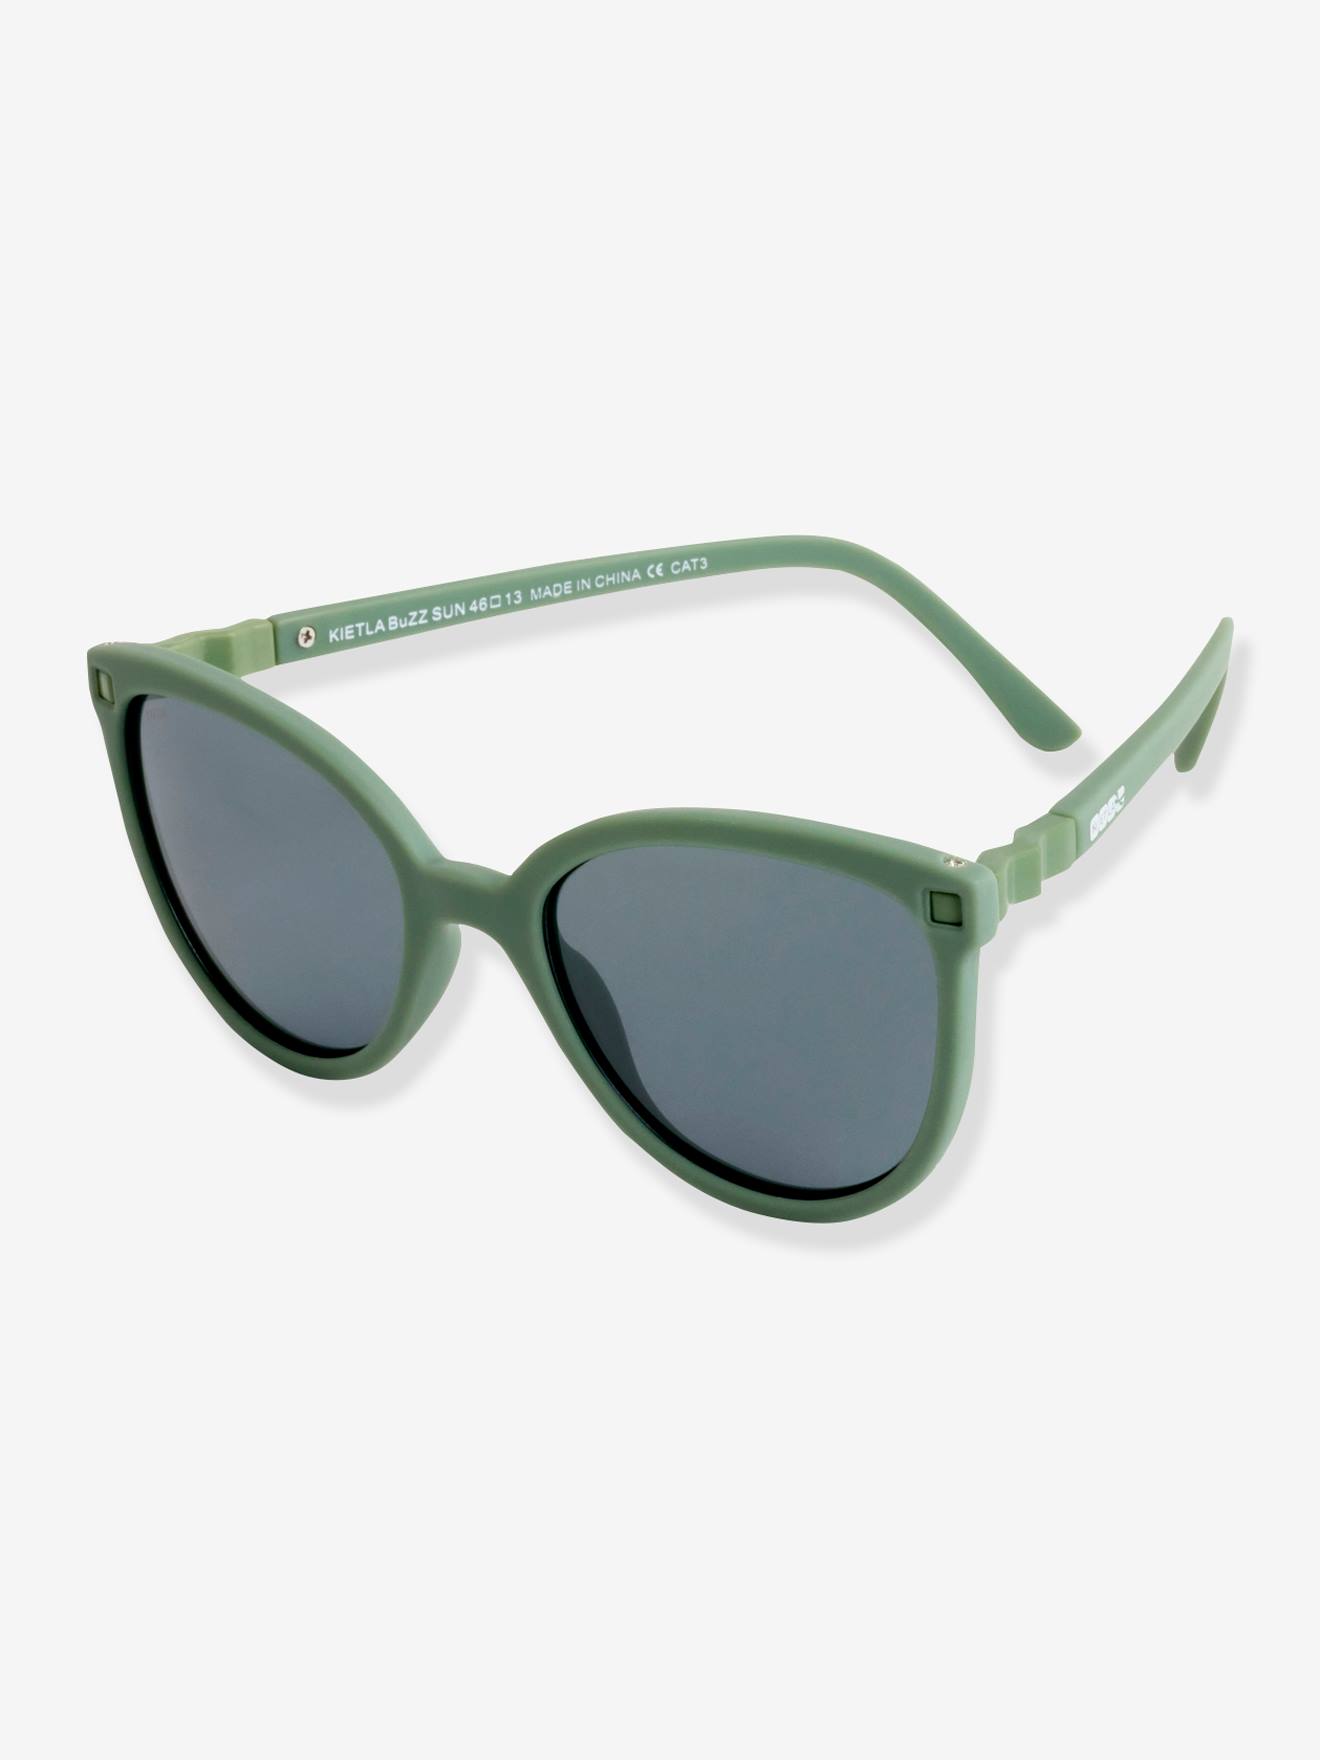 Sun Buzz Sunglasses for Children by KI ET LA khaki